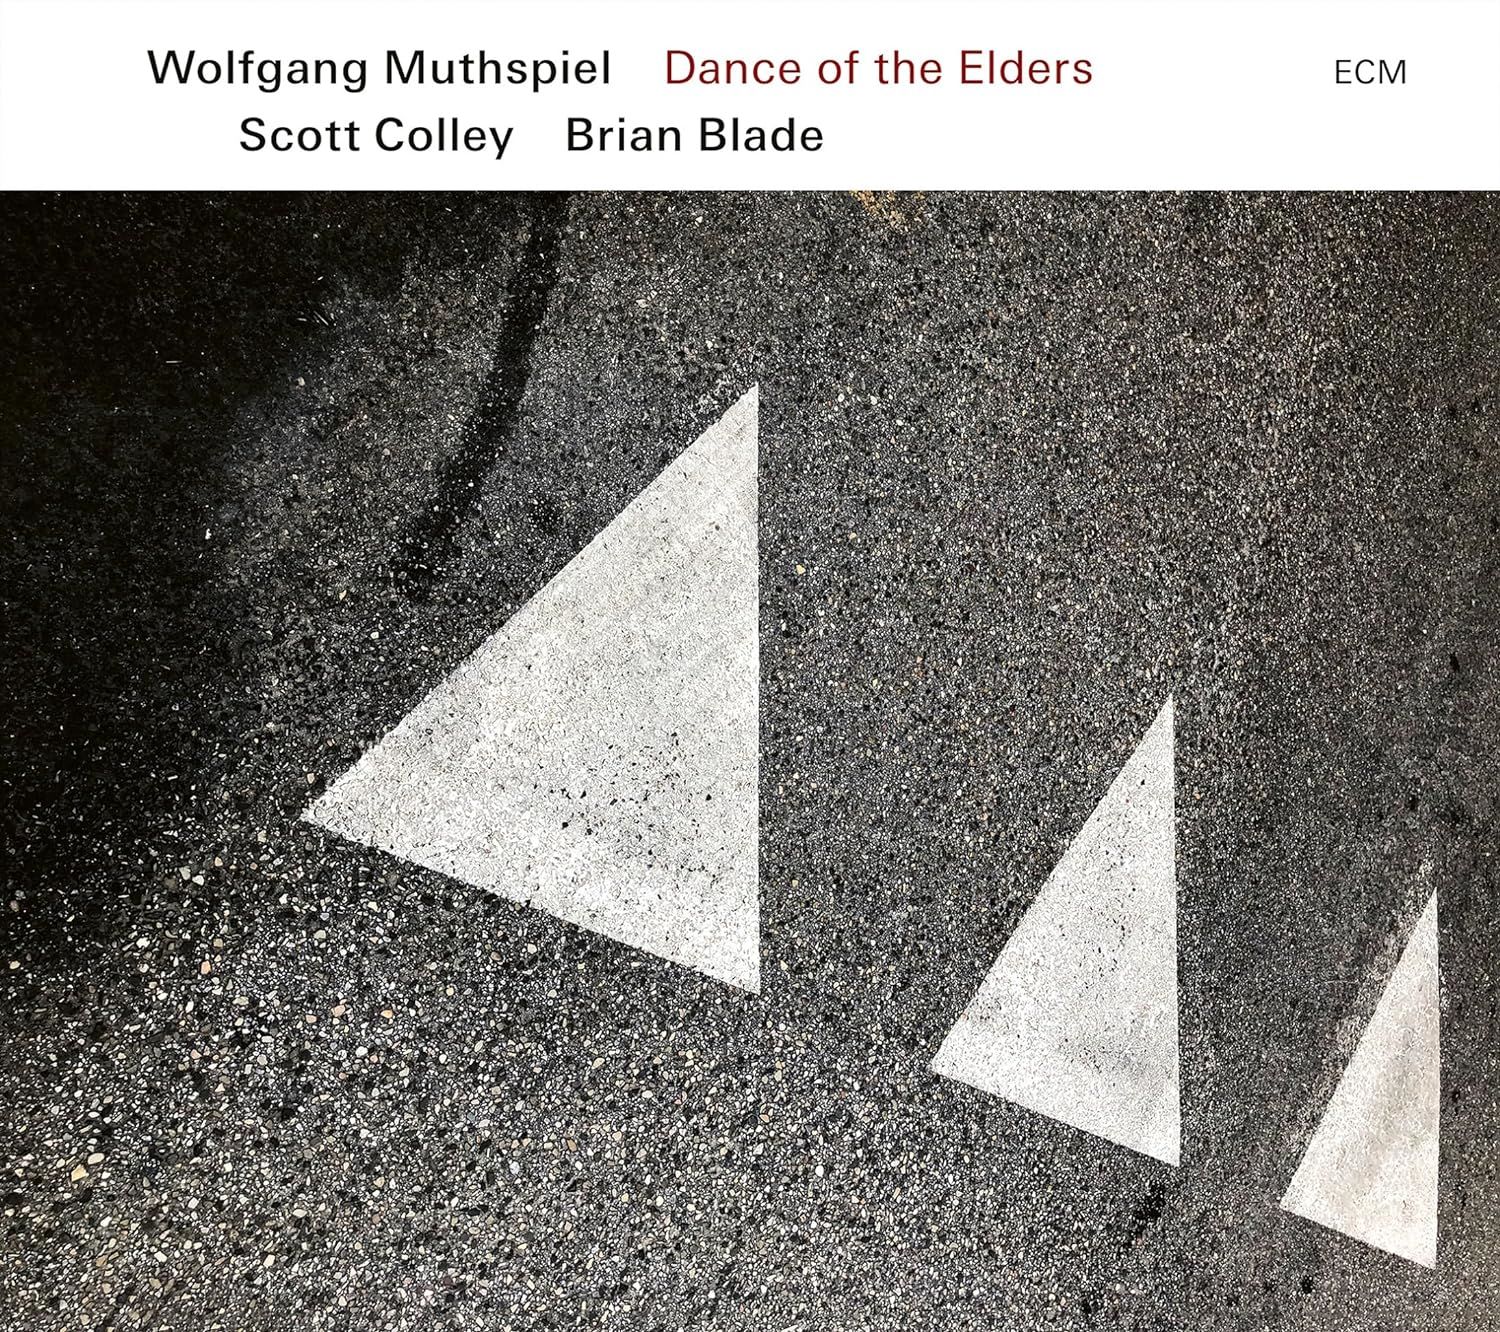 WOLFGANG MUTHSPIEL - DANCE OF THE ELDERS (2023) SCOTT COLLEY BRIAN BLADE - LP ECM RECORDS SIFIR PLAK